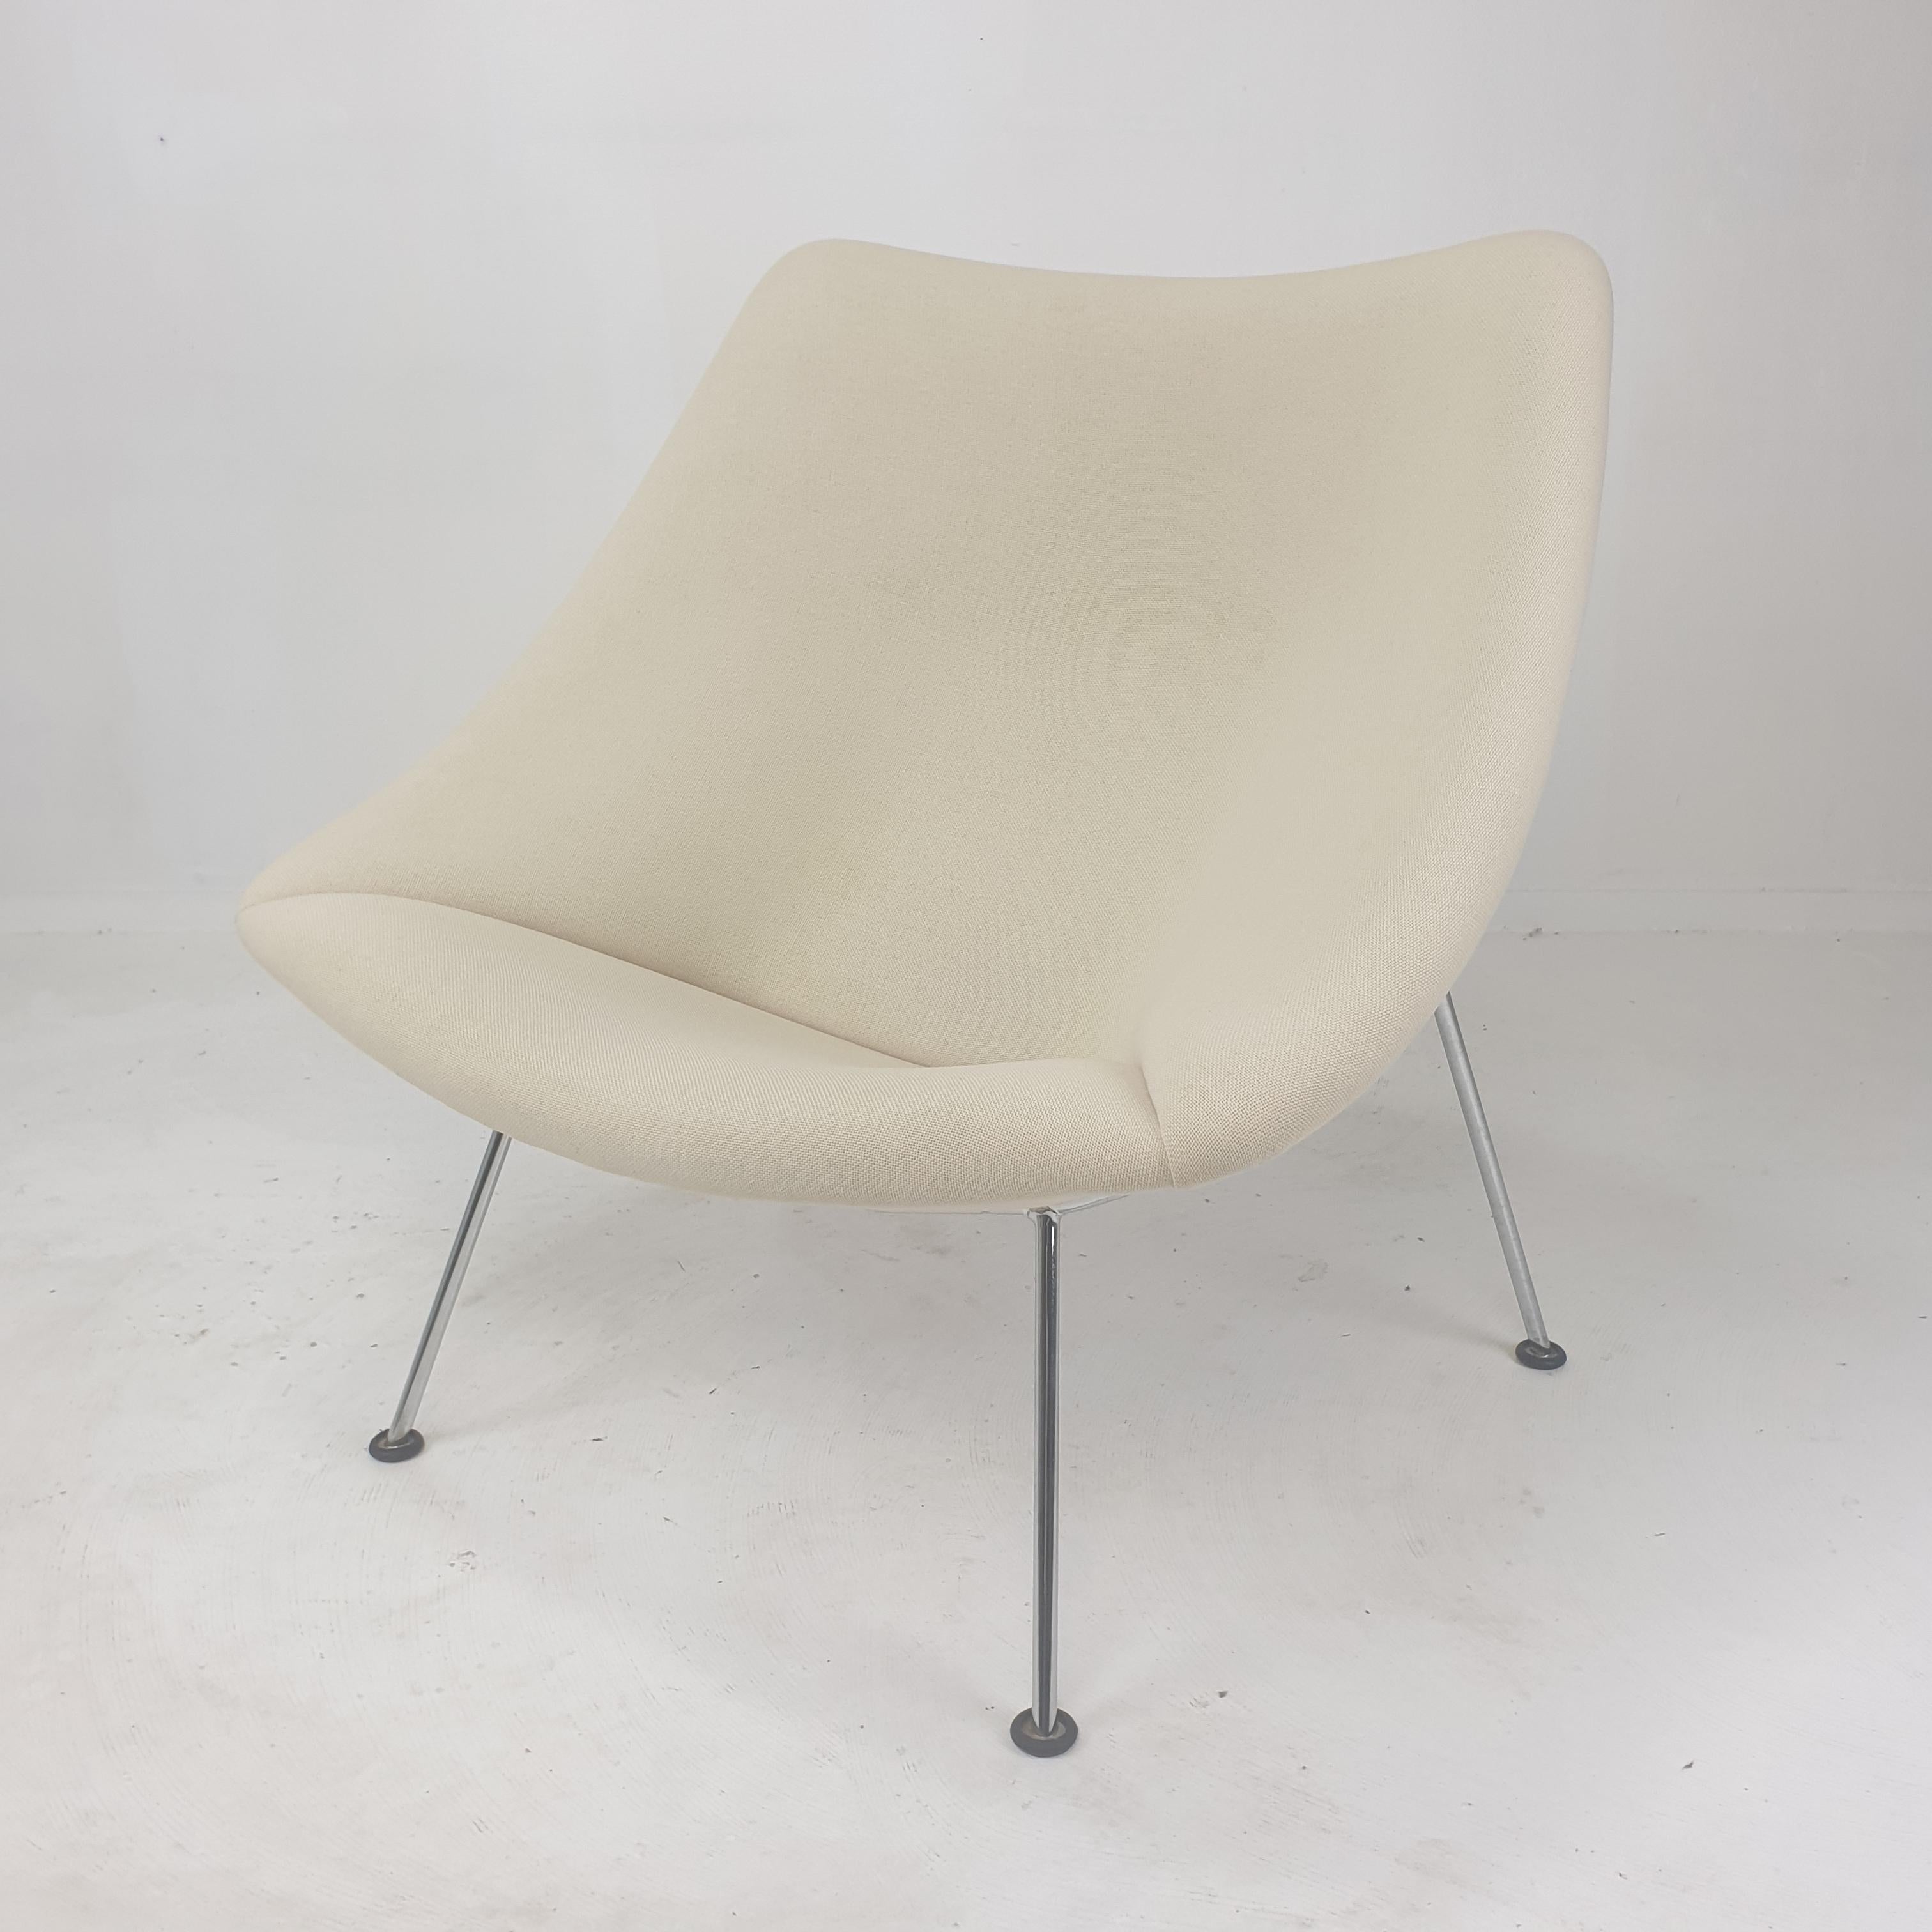 Les célèbres et très confortables chaises Artifort Oyster de Pierre Paulin. 

Conçu au début des années 60, cet ensemble particulier est fabriqué dans les années 80. 
Les pieds sont en métal chromé.

Cette belle chaise a le tissu Tonus de Kvadrat